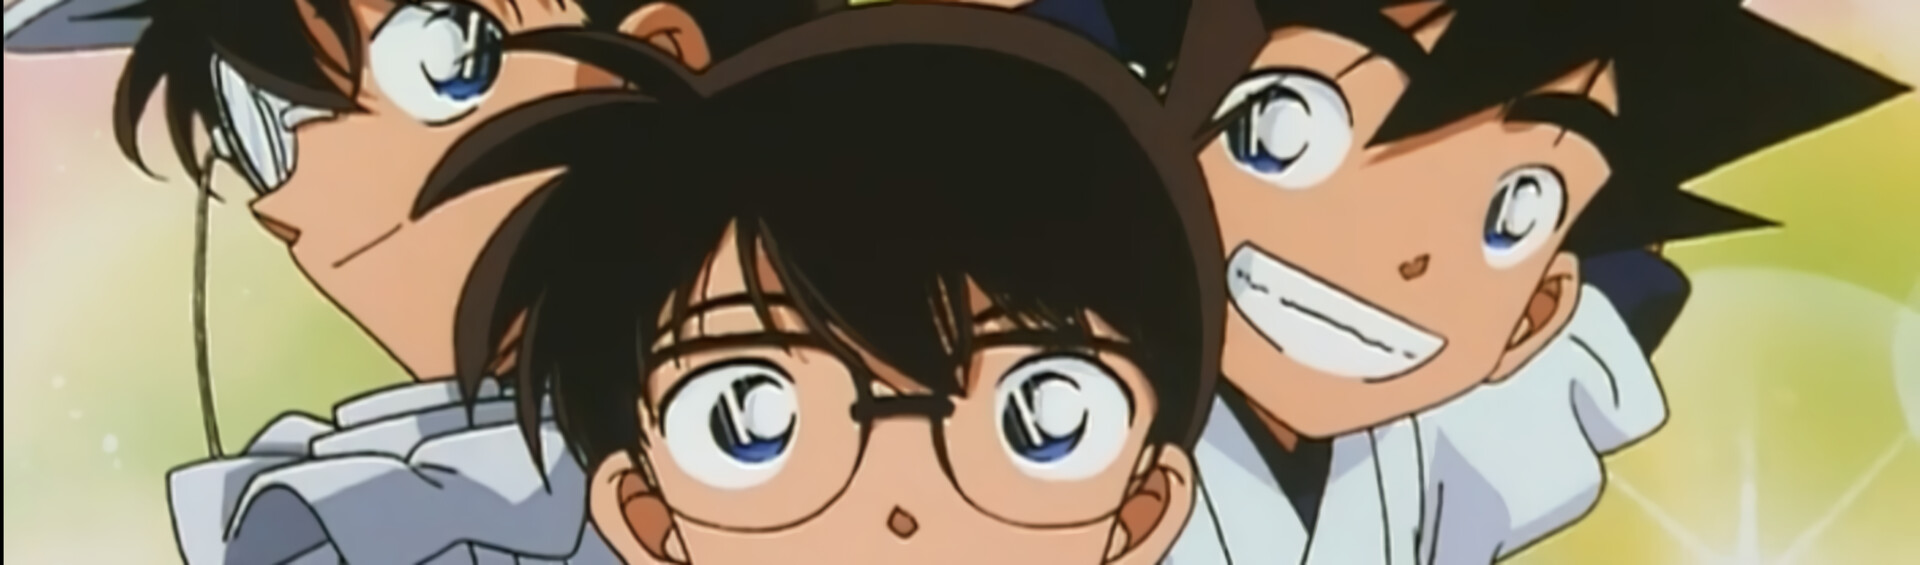 El detectiu Conan: OVAs